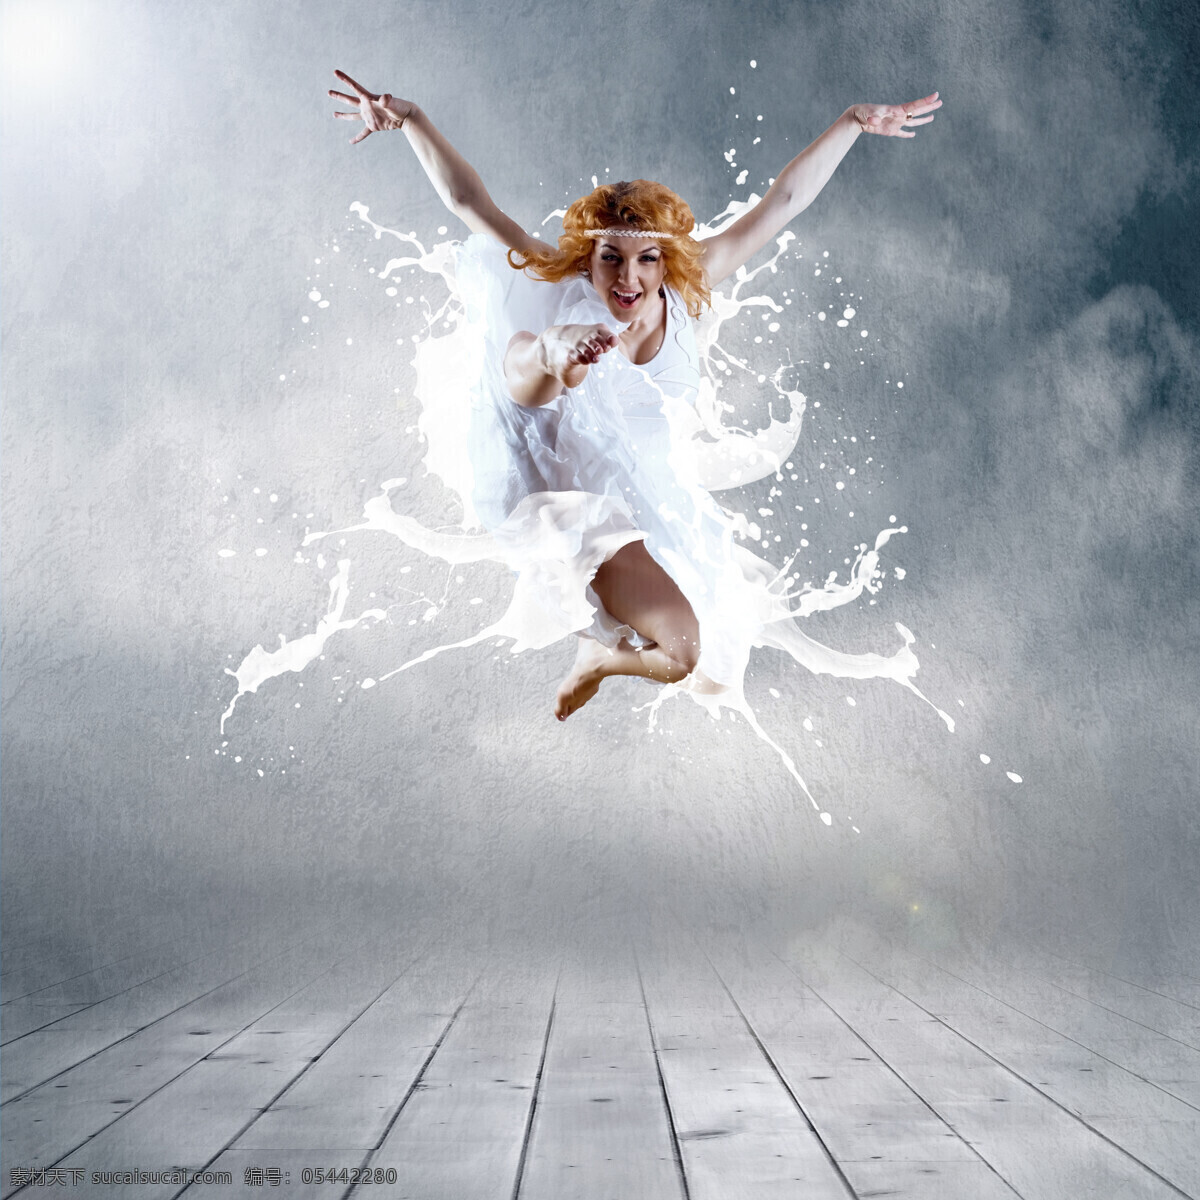 创意 牛奶 外国女性 美女 女孩 舞蹈 跳舞 芭蕾 动感 水花 创意图片 美女图片 人物图片